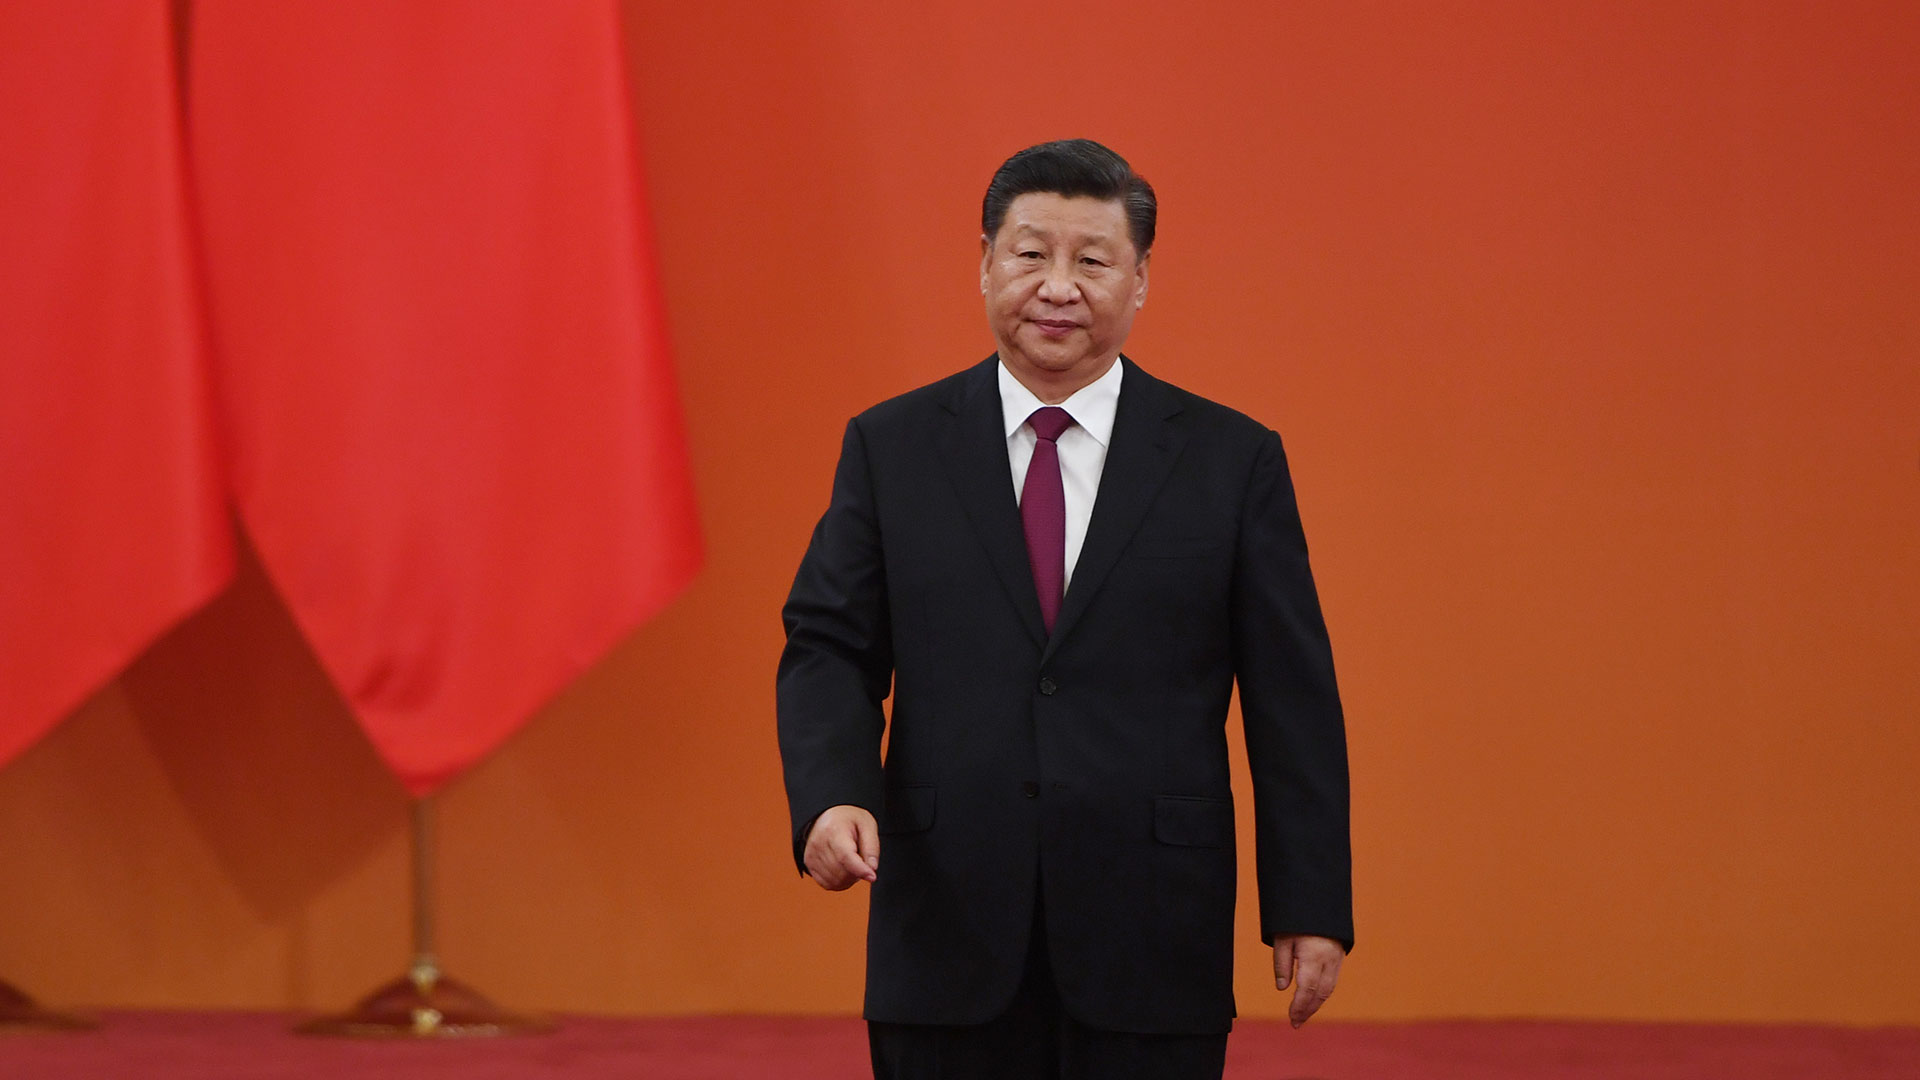 Xi Jinping promete respetar la autonomía de Hong Kong